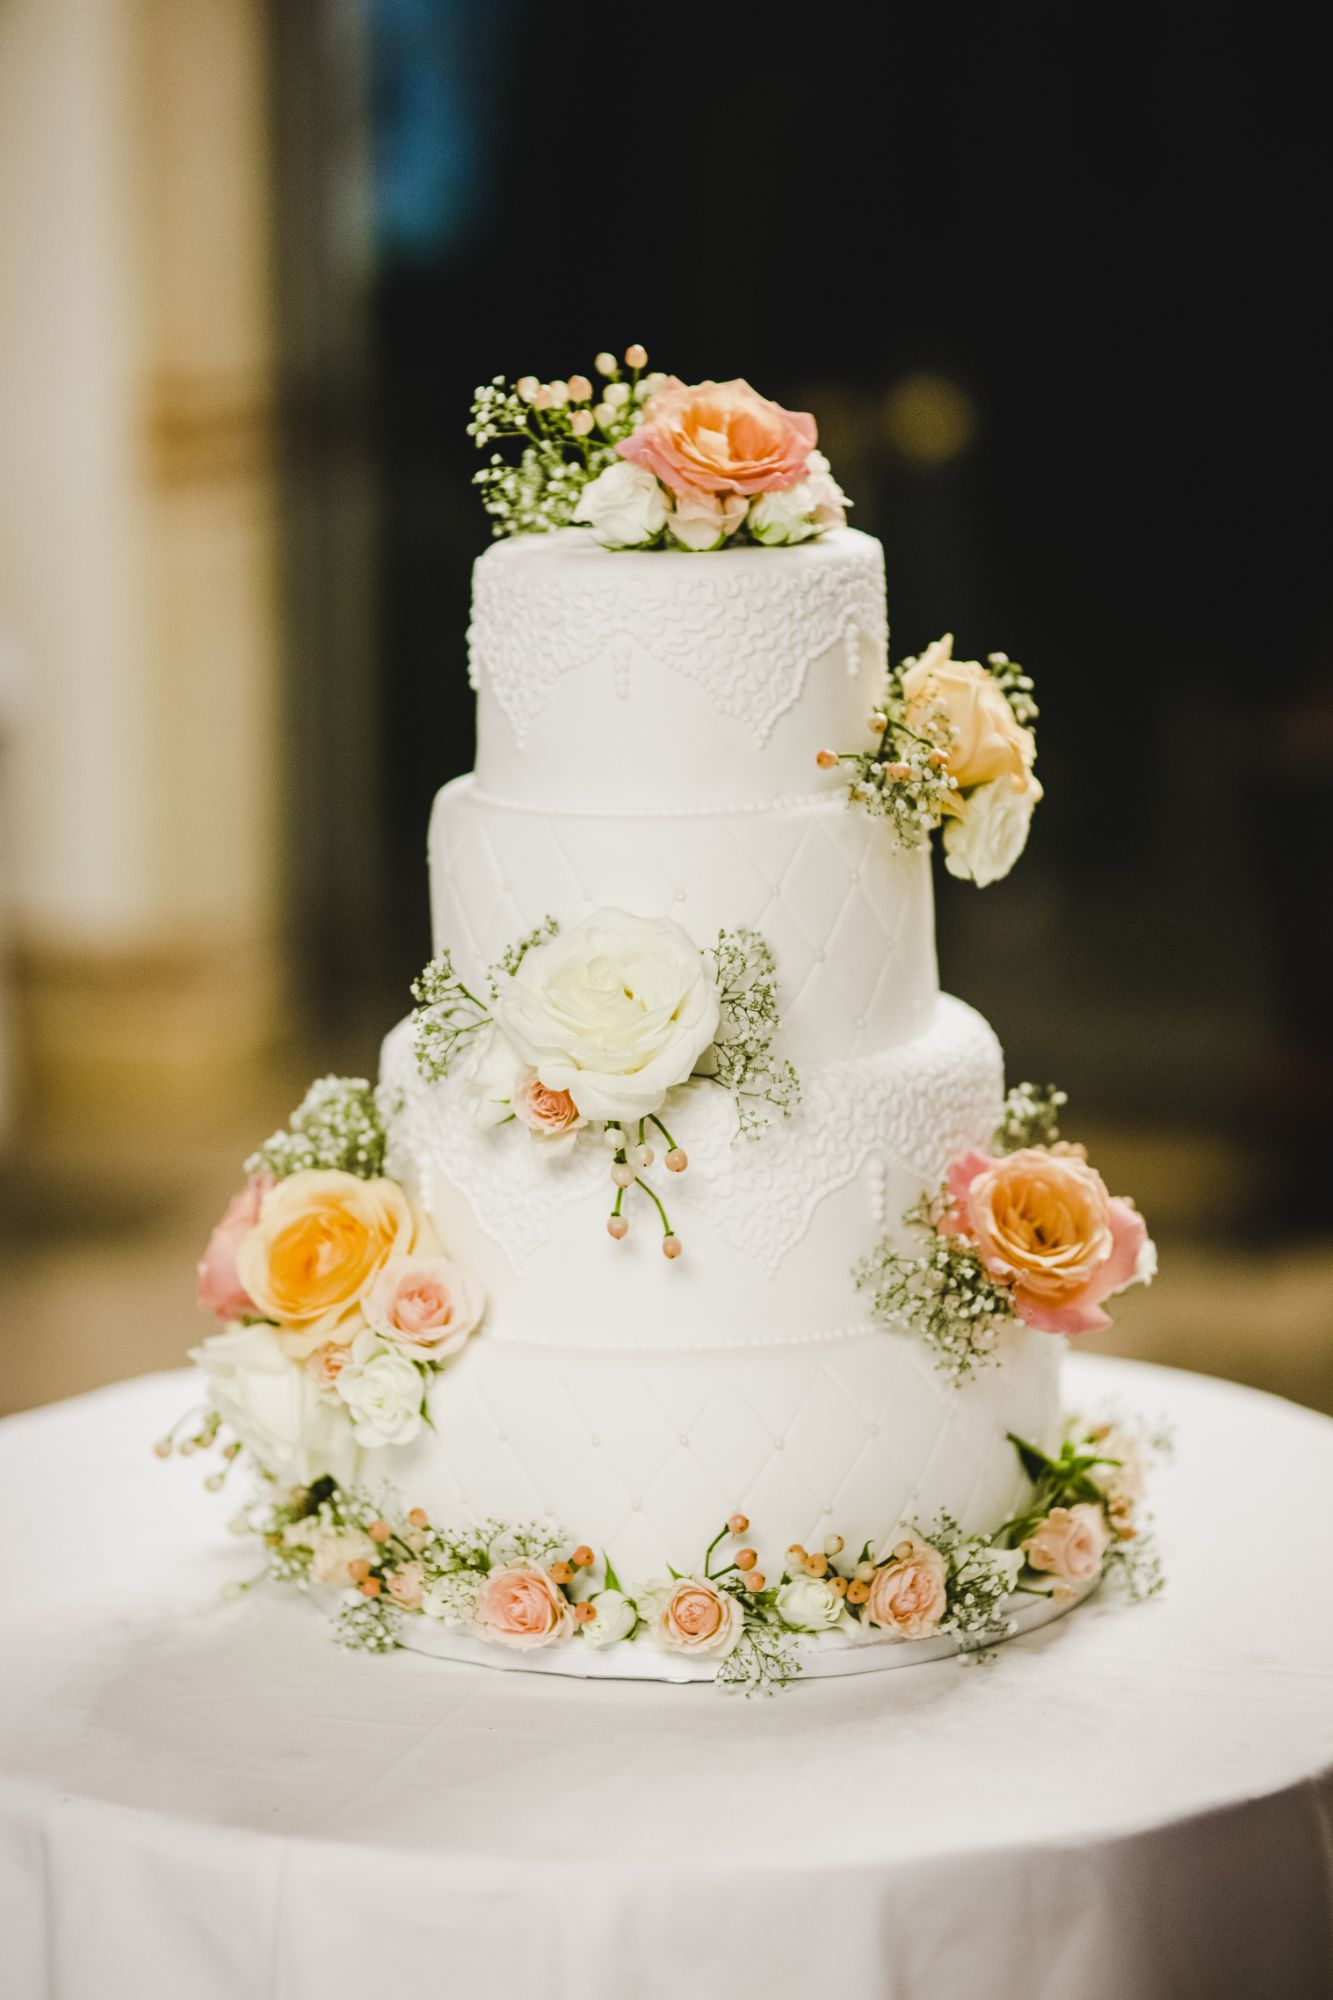 Worsley wedding cake